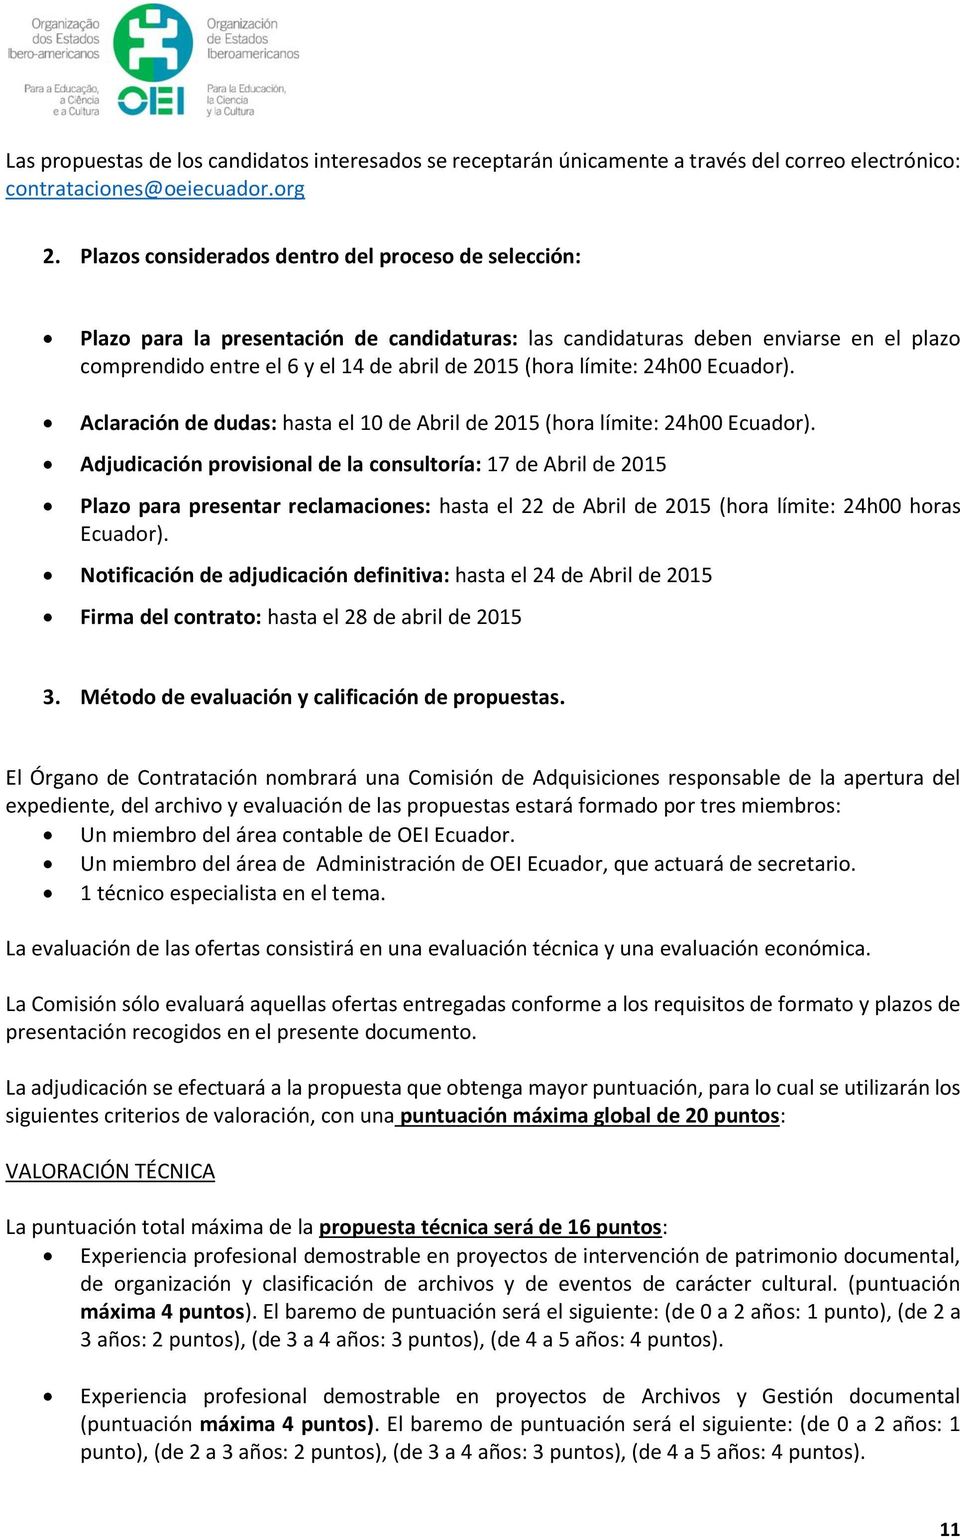 límite: 24h00 Ecuador). Aclaración de dudas: hasta el 10 de Abril de 2015 (hora límite: 24h00 Ecuador).